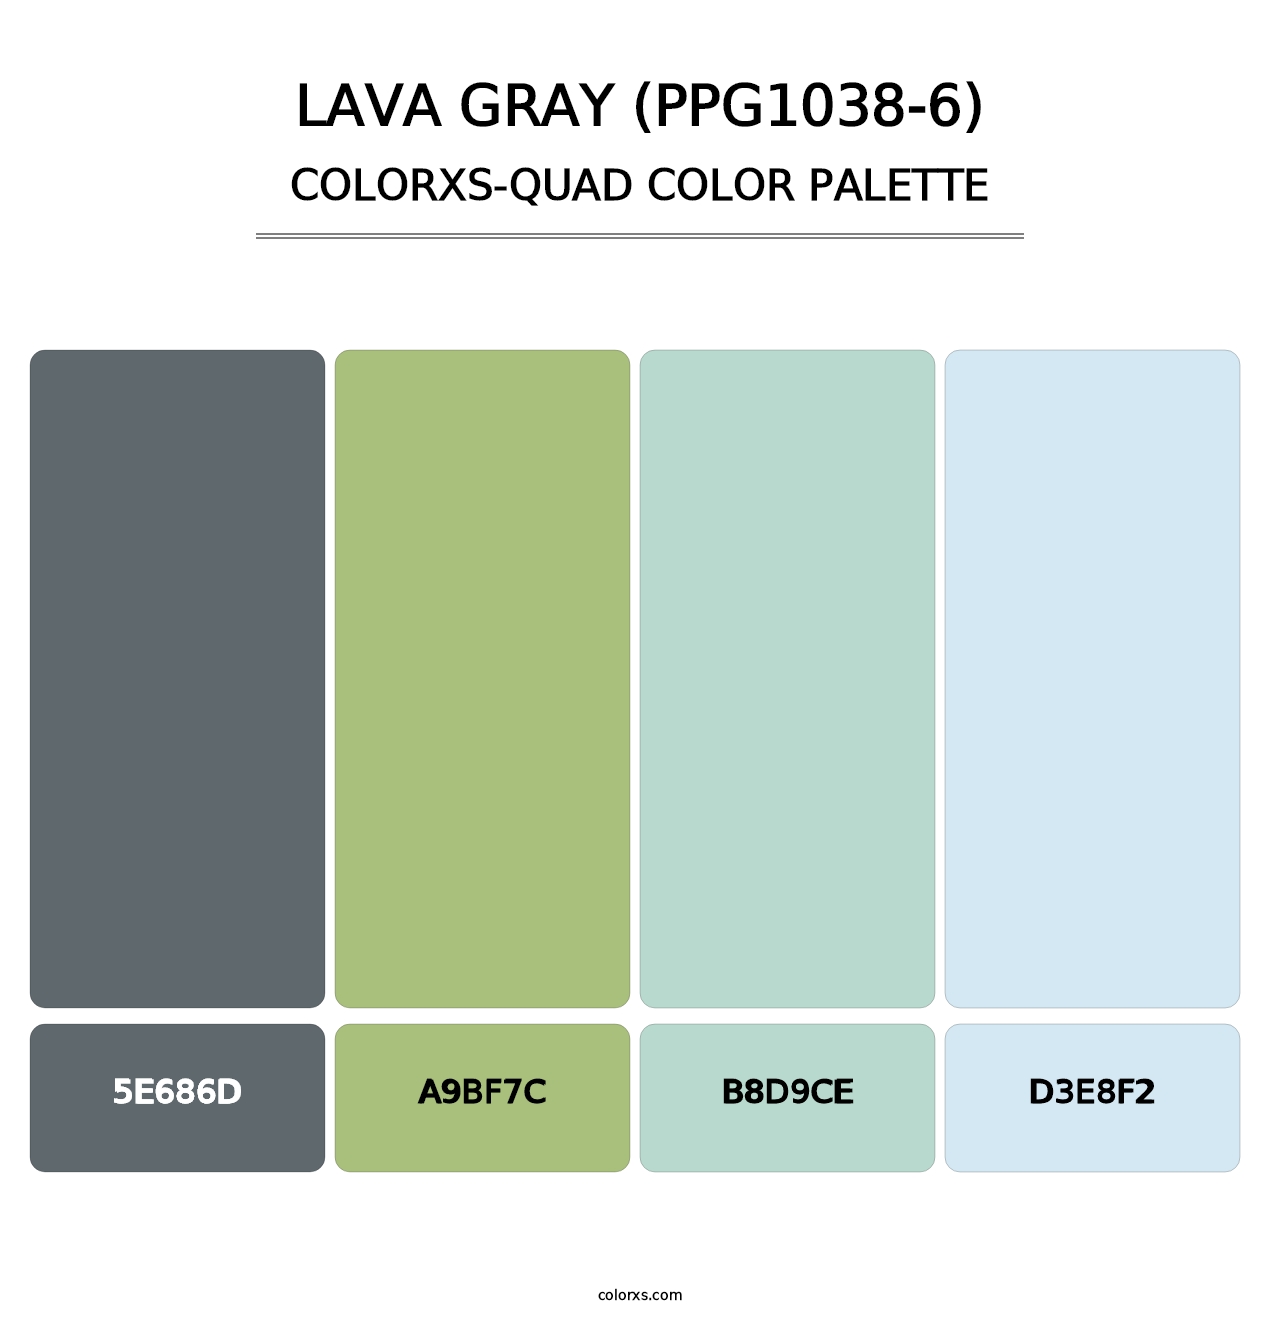 Lava Gray (PPG1038-6) - Colorxs Quad Palette